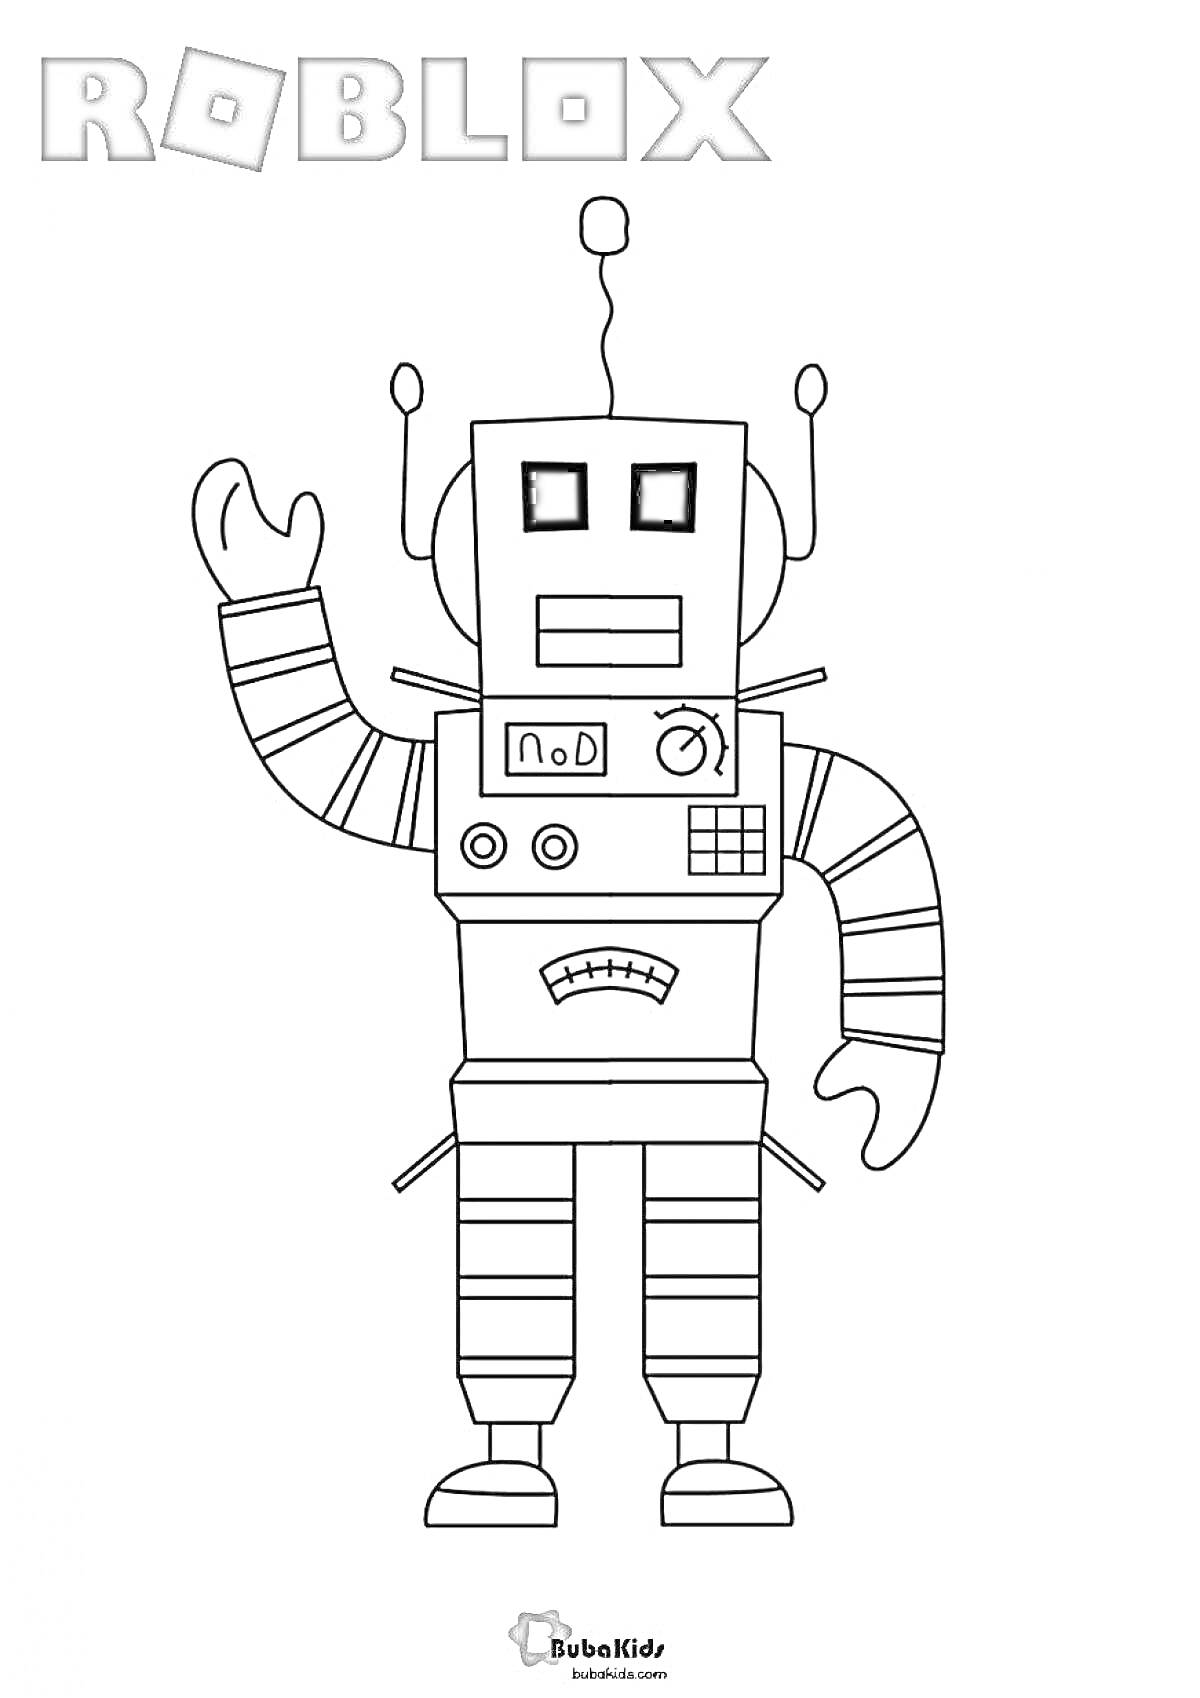 Раскраска Робот из Роблокса, стоящий прямо с поднятой рукой, в полосатом костюме, антенны на голове.